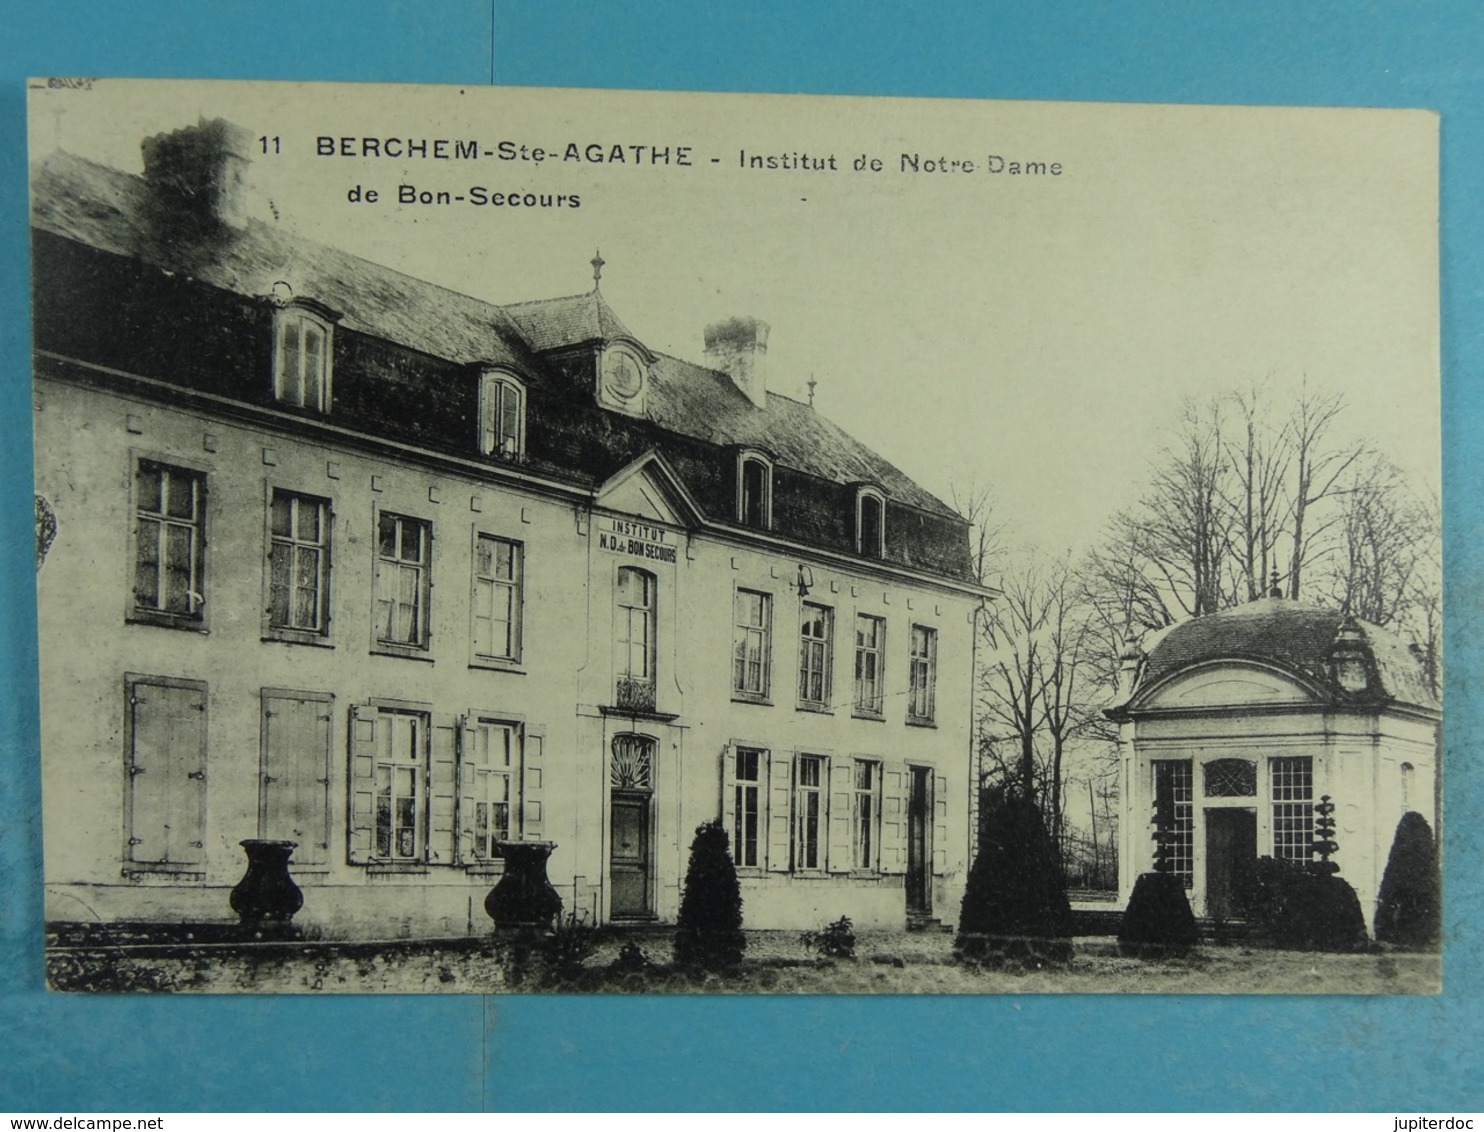 Berchem-Ste-Agathe Institut De Notre Dame - Berchem-Ste-Agathe - St-Agatha-Berchem